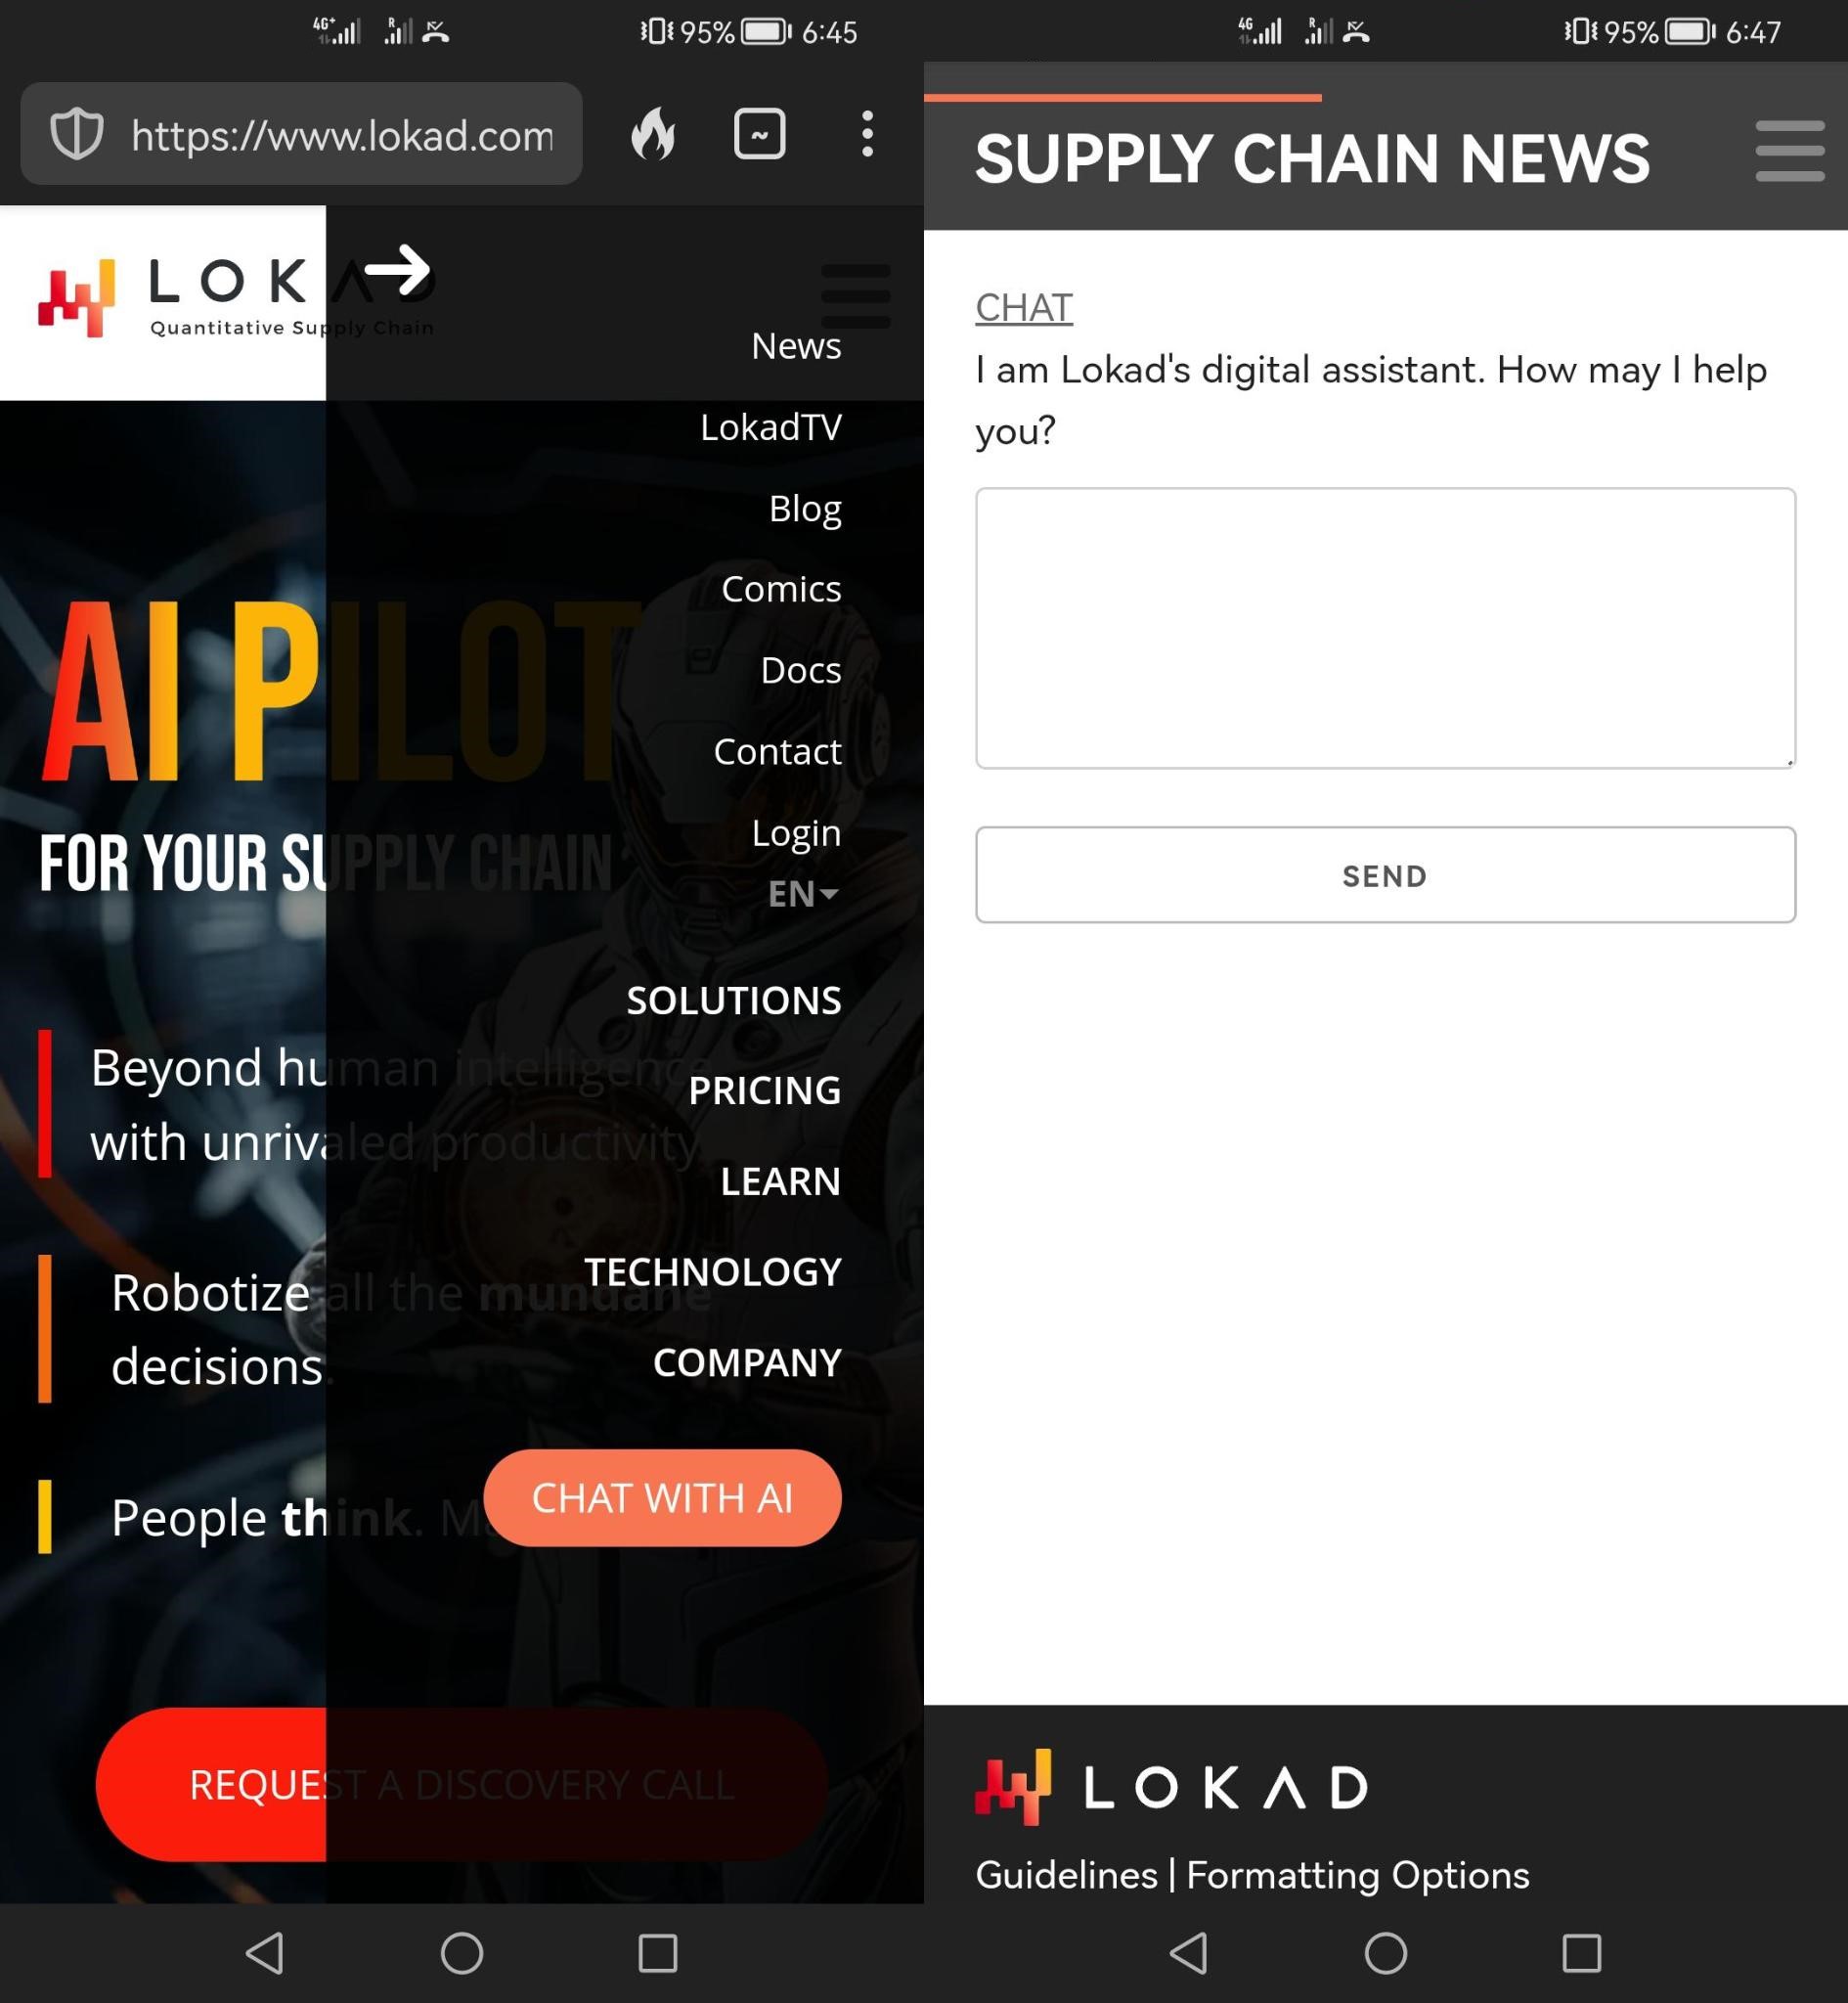 Скриншоты мобильного телефона с AI чат-ботом Lokad.